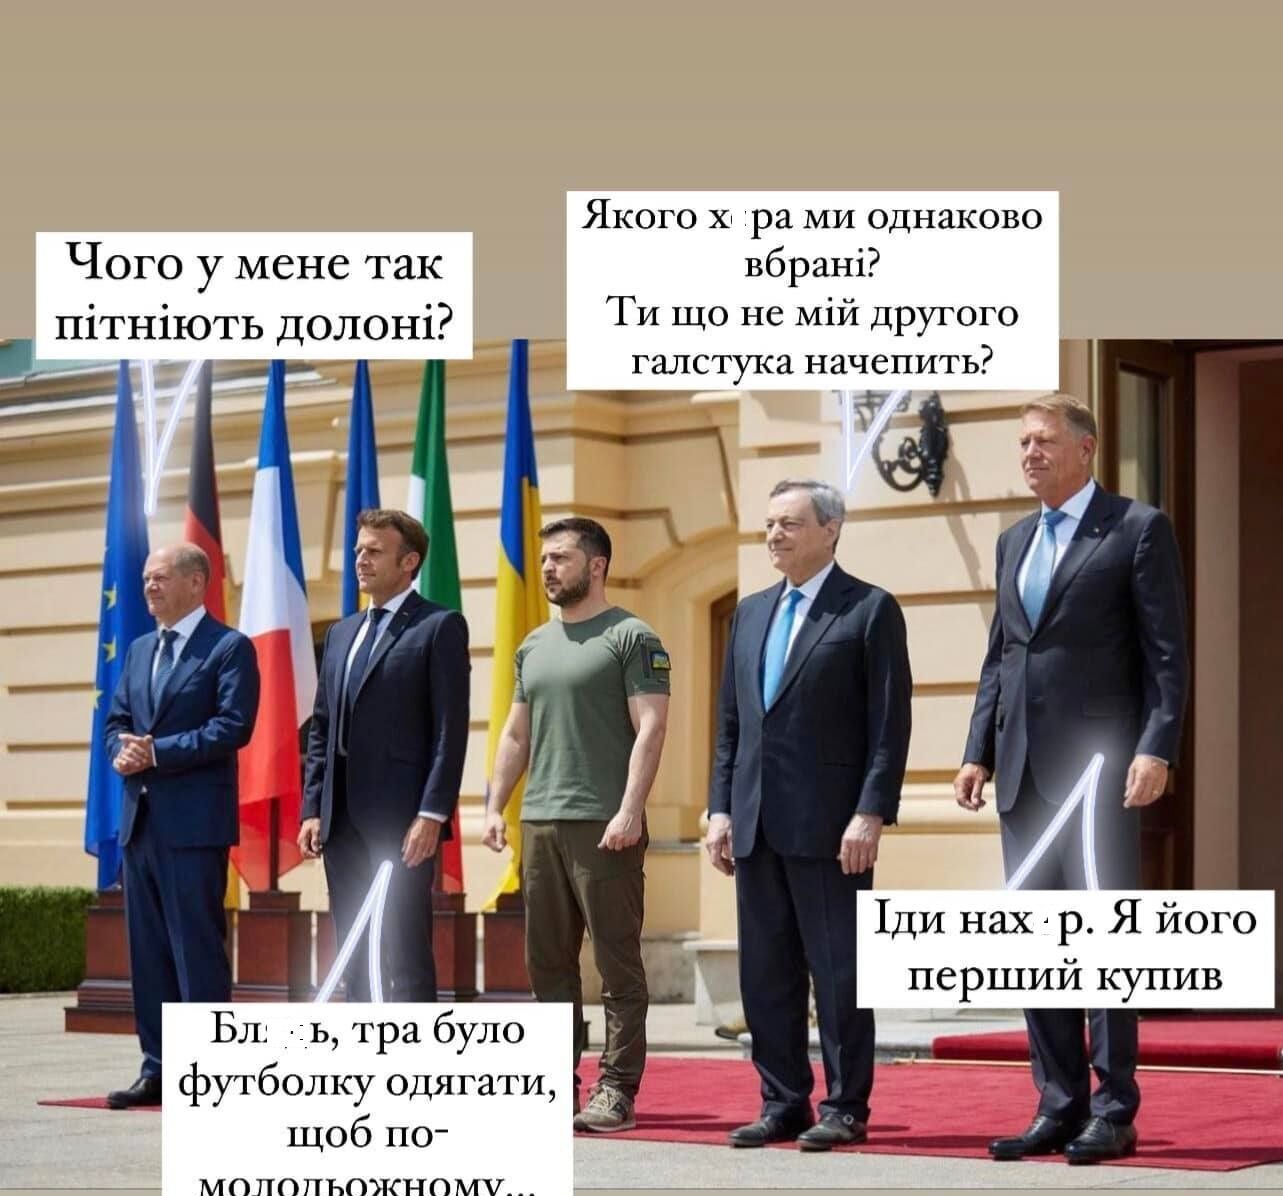 Встреча европейских политиков в Киеве